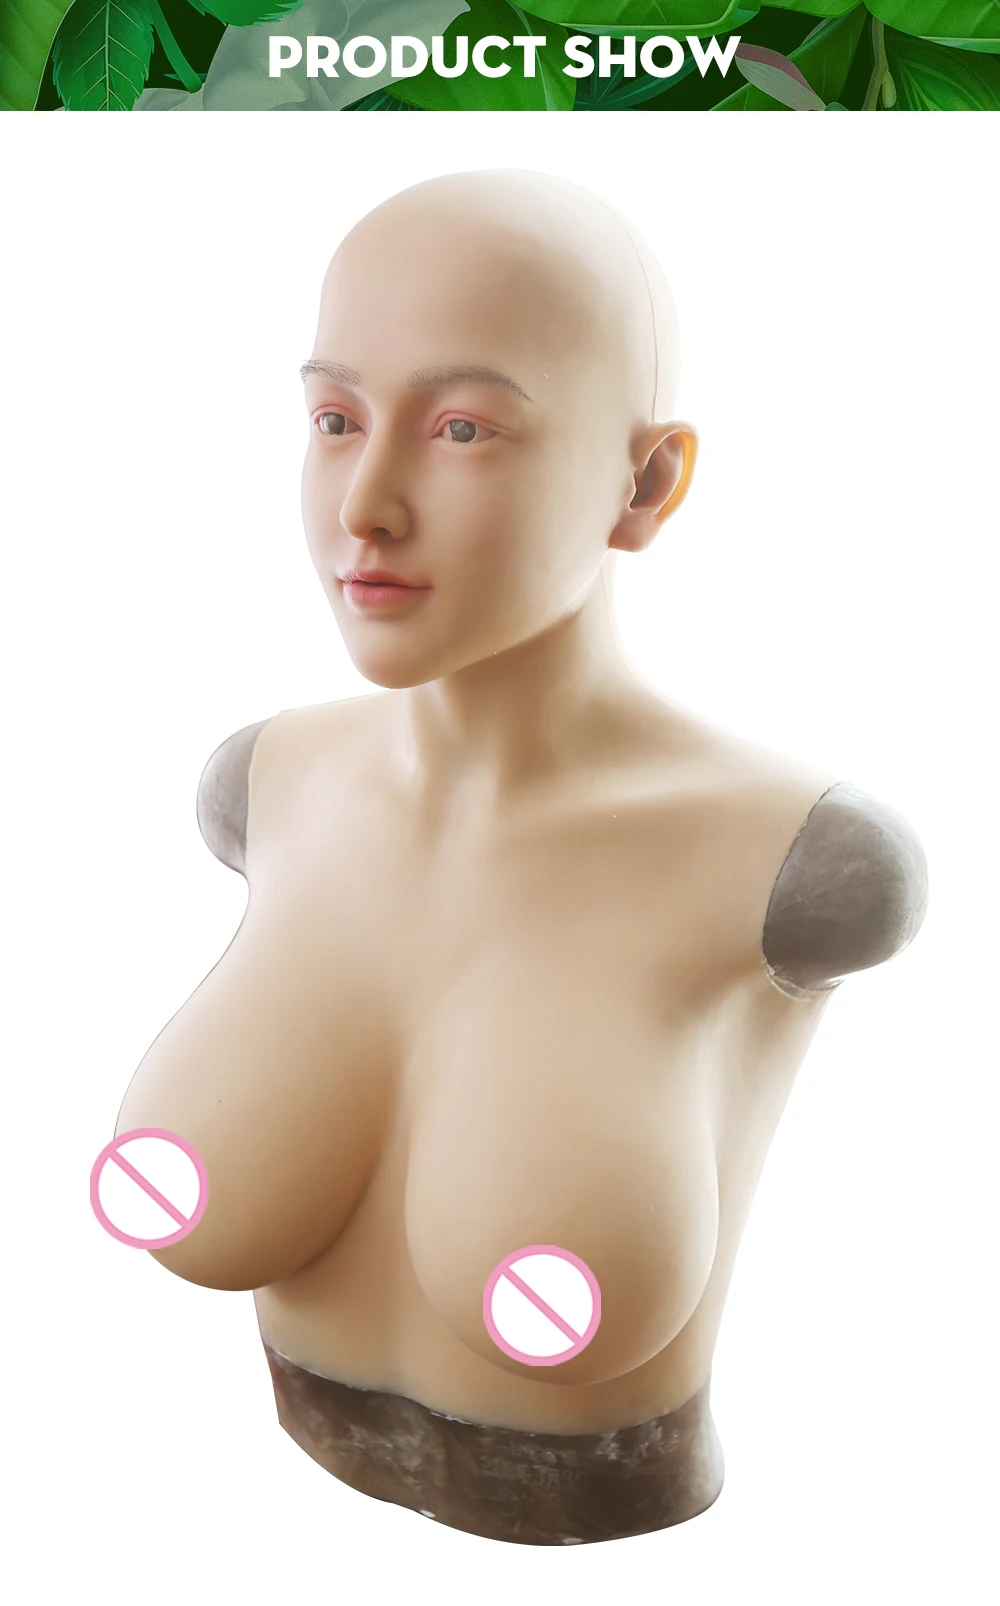 Драг королева силиконовая маска Реалистичная Женская Ангел лицо Гель силиконовая грудь форма поддельные груди для Трансвестит транссексуалов кукольная маска